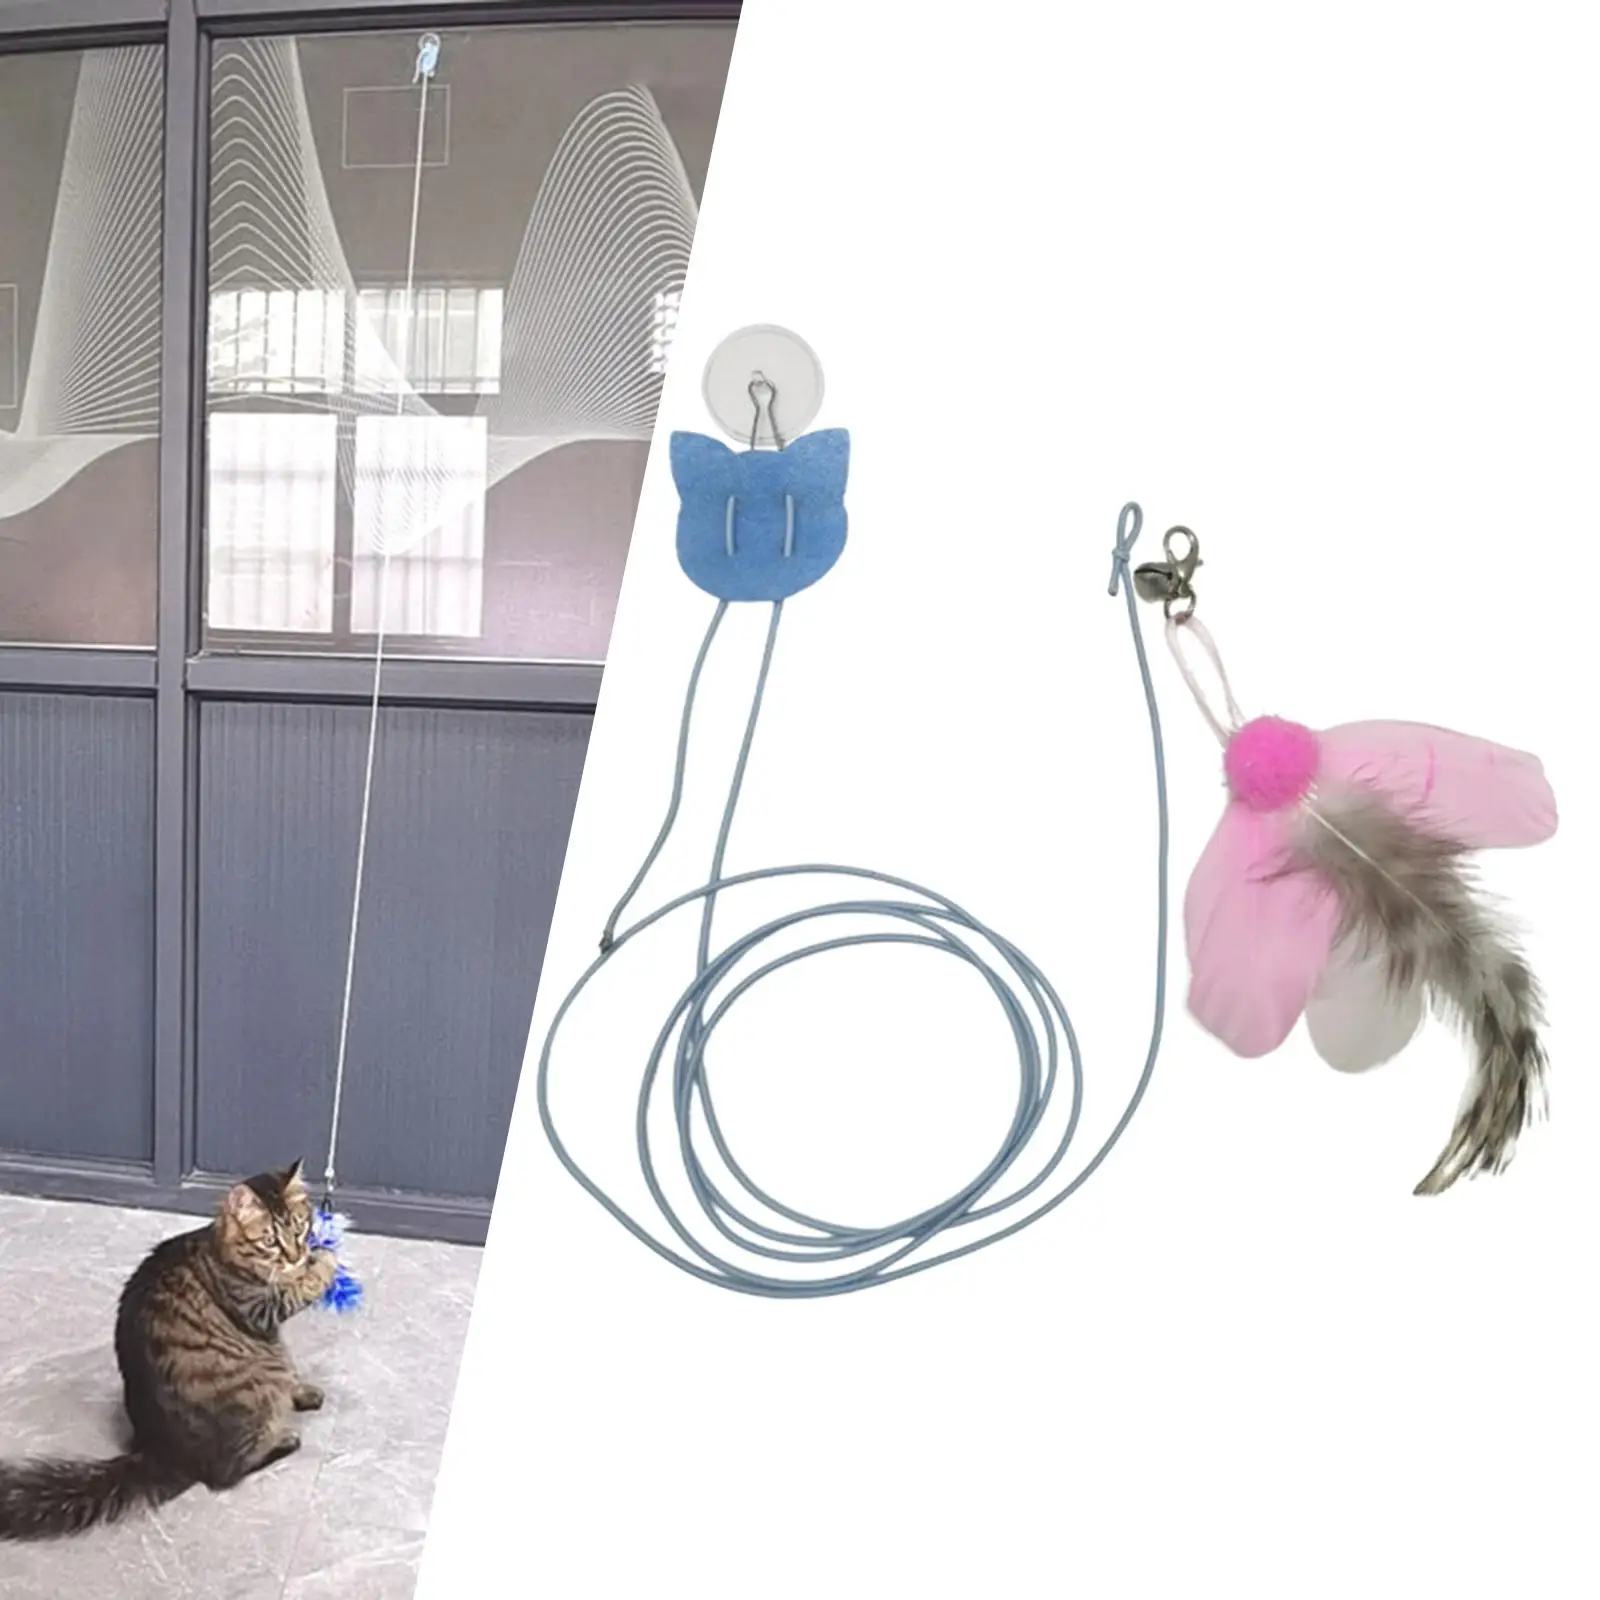 Em promoção! Simulação De Pássaro, Rato De Brinquedo Do Gato Gato